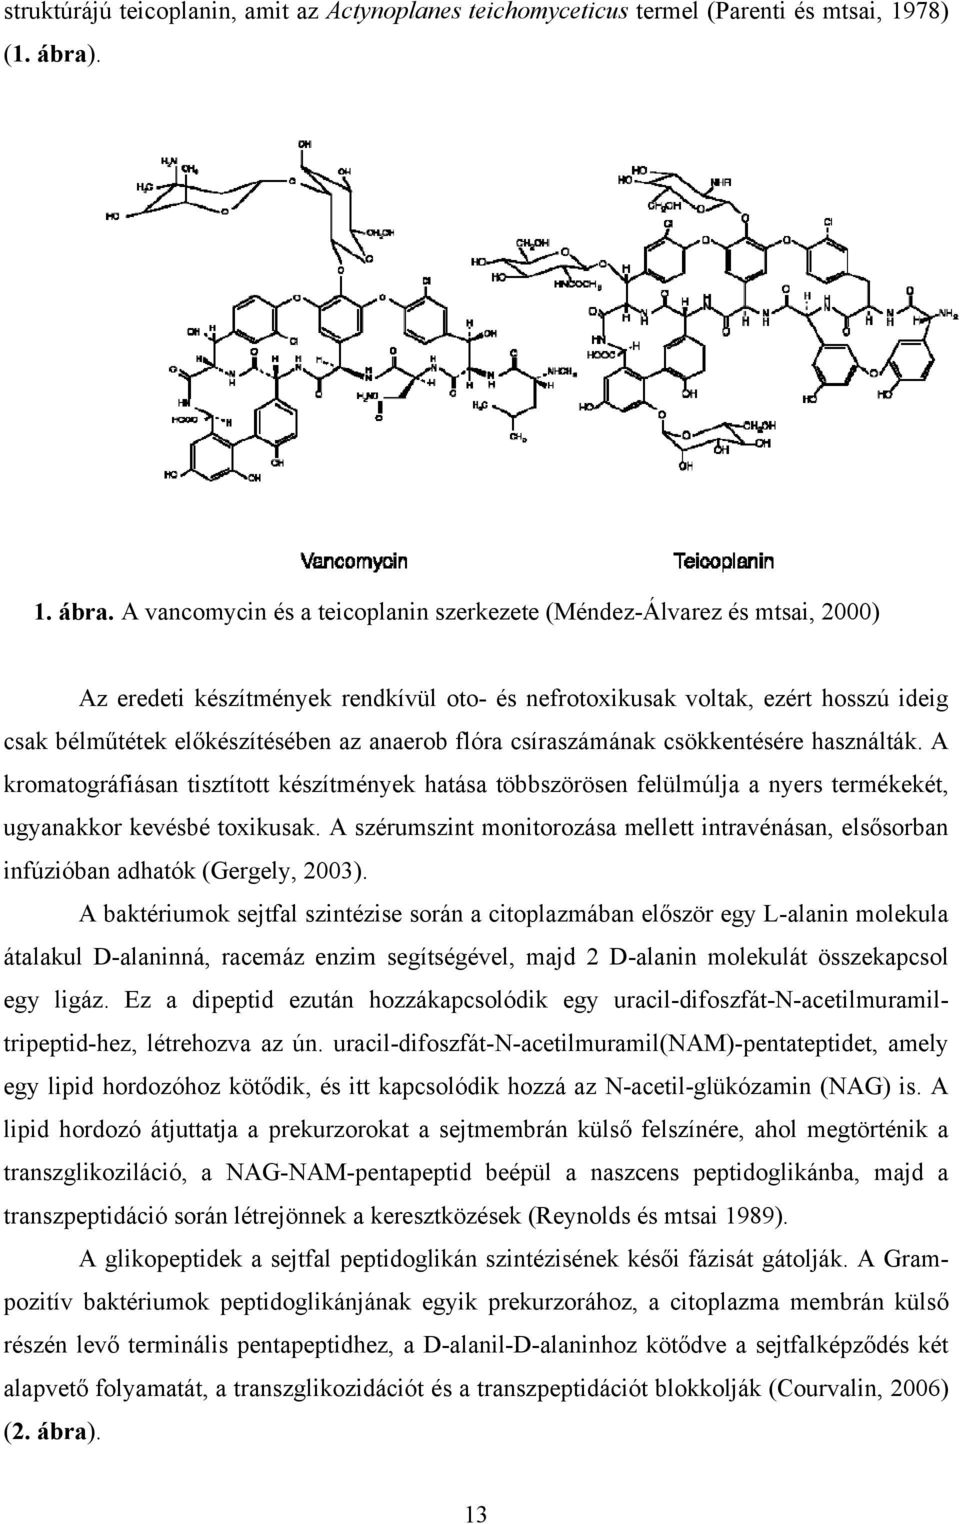 A vancomycin és a teicoplanin szerkezete (Méndez-Álvarez és mtsai, 2000) Az eredeti készítmények rendkívül oto- és nefrotoxikusak voltak, ezért hosszú ideig csak bélműtétek előkészítésében az anaerob